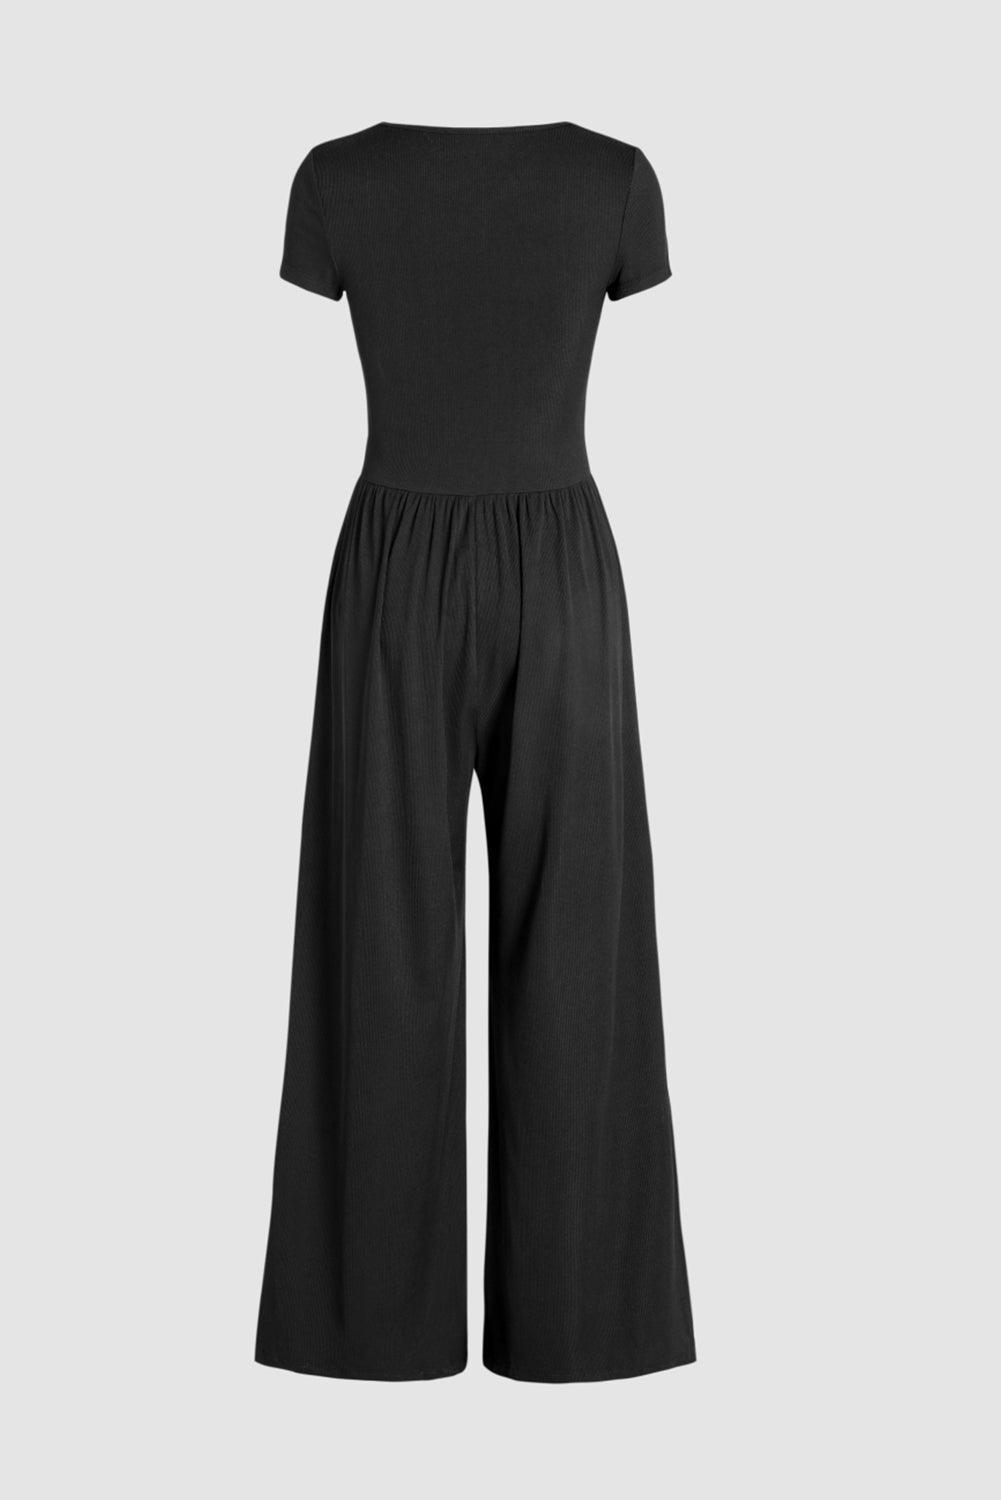 Black Pleated High Waist U Neck Short Sleeve Jumpsuit - L & M Kee, LLC